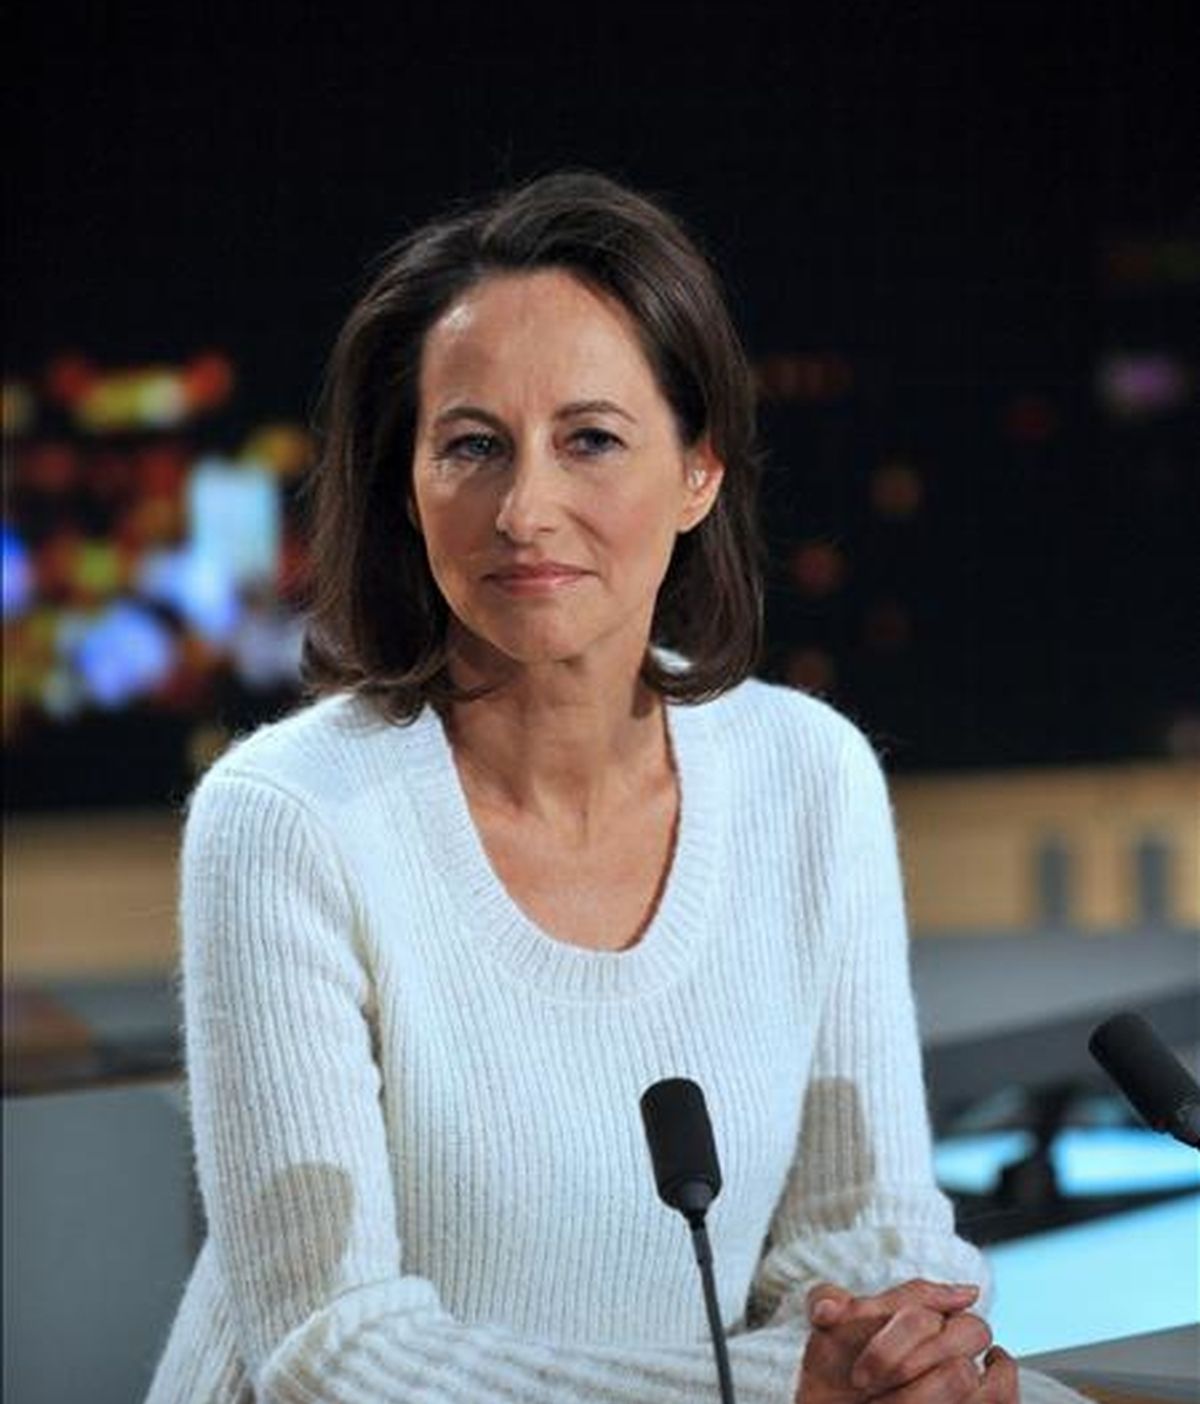 La ex candidata socialista a la presidencia de Francia Segolene Royal en noviembre pasado en el set del noticiero de la cadena de televisión TF1. EFE/Archivo